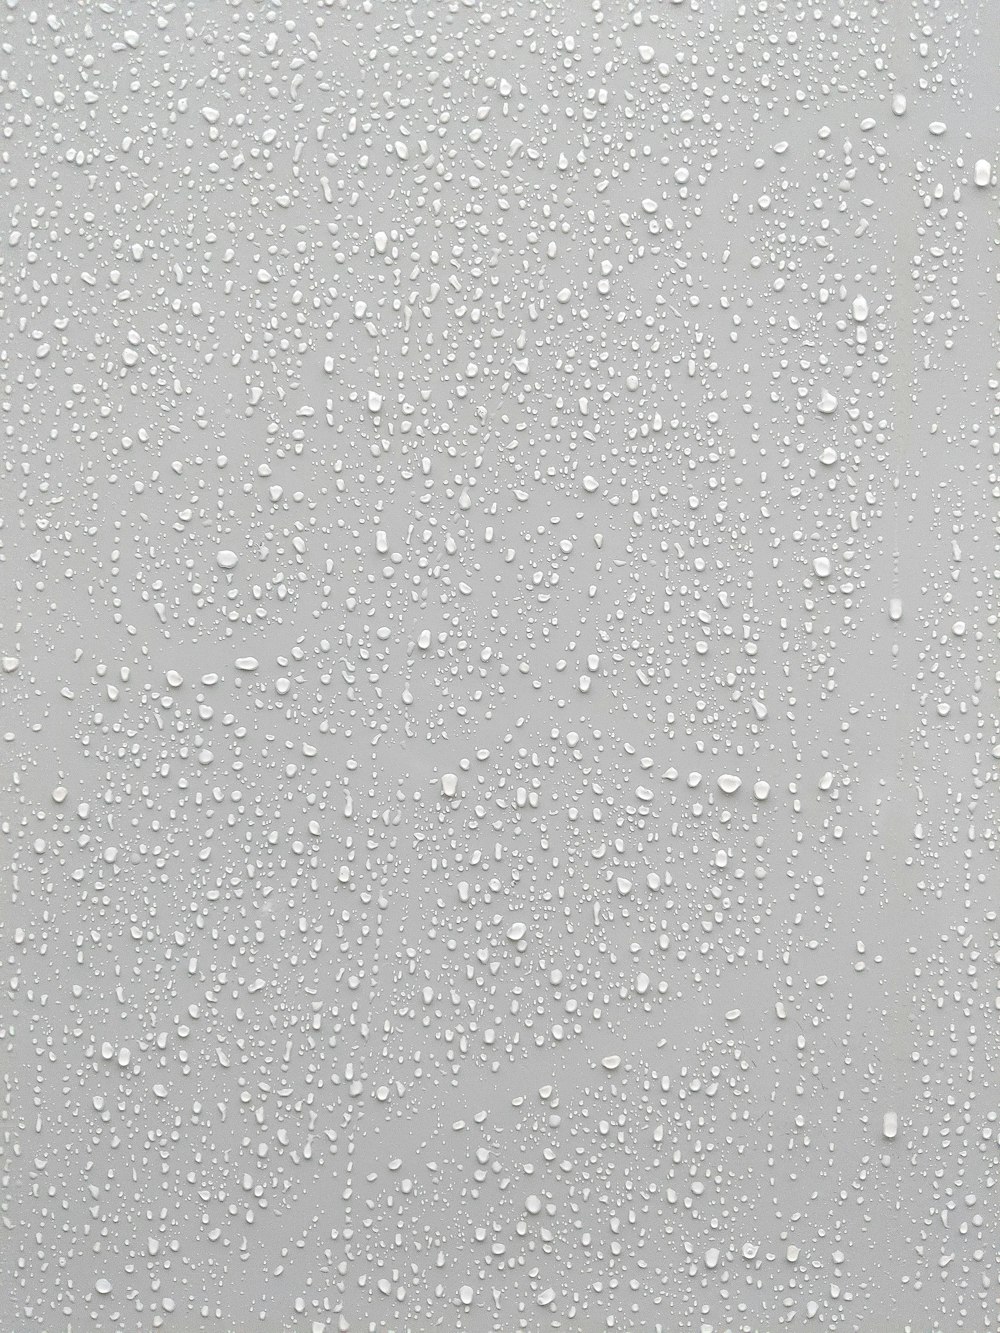 Gotas de agua sobre una superficie de vidrio con un fondo blanco